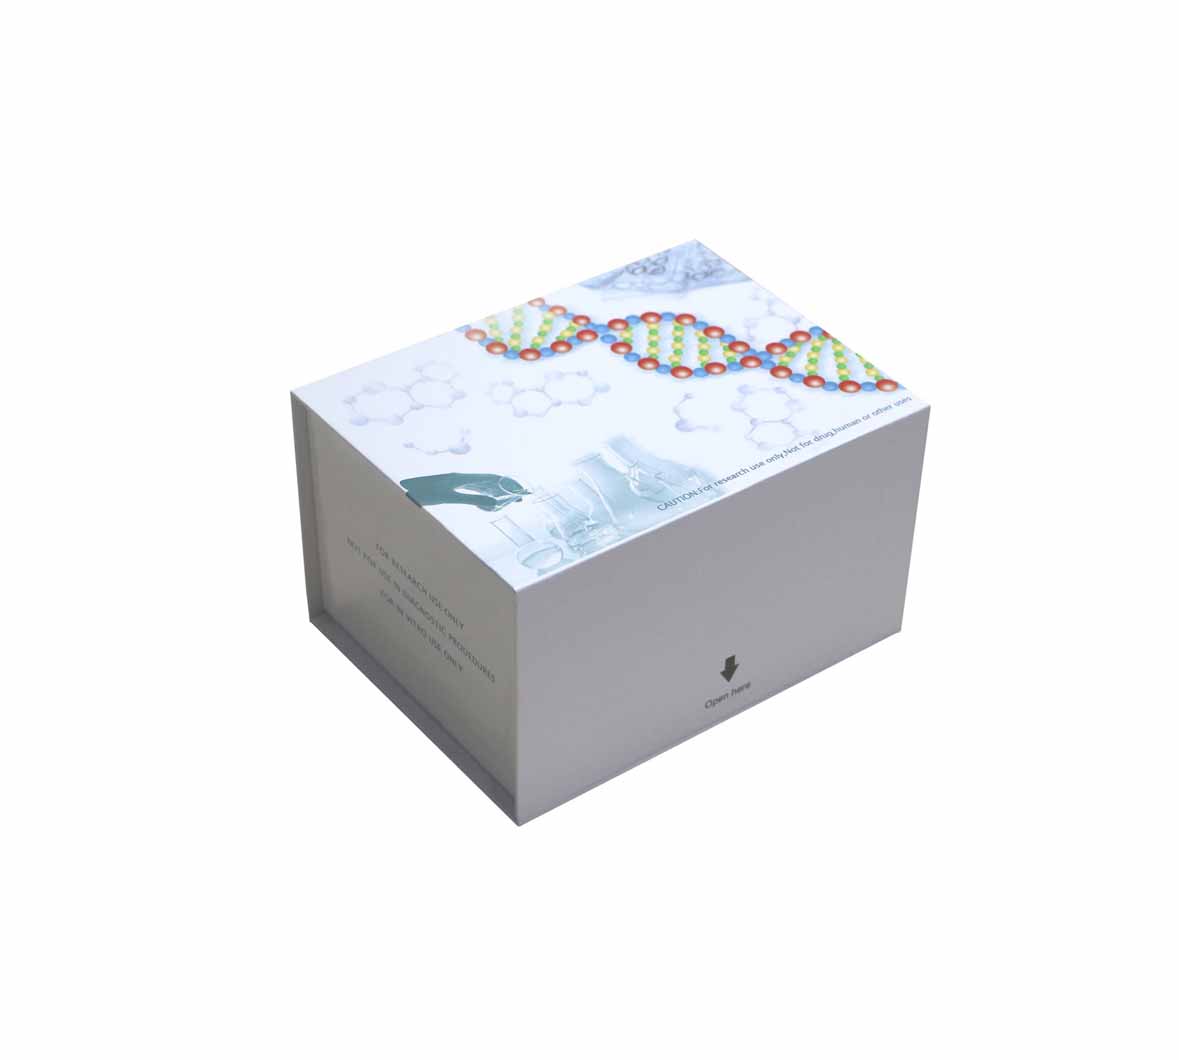 鹅促性腺激素释放激素(GnRH)ELISA测定试剂盒